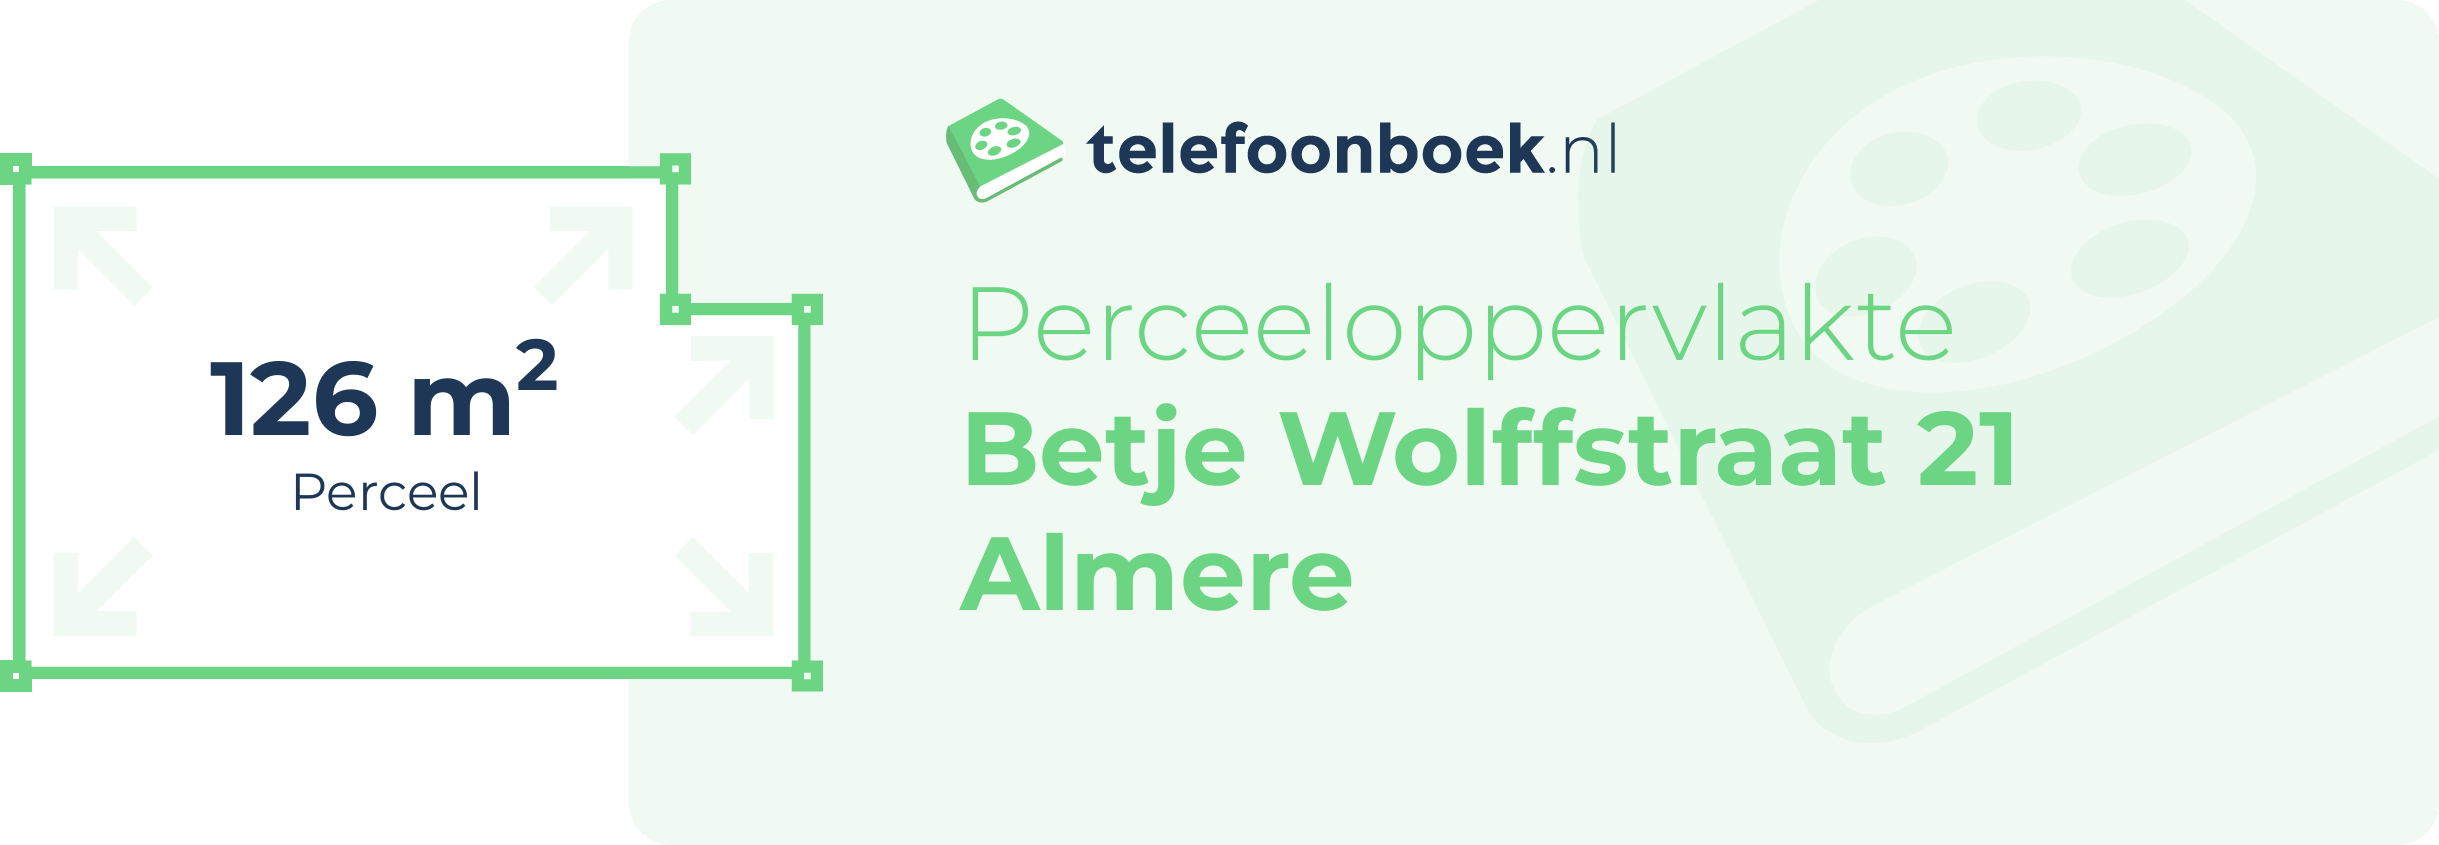 Perceeloppervlakte Betje Wolffstraat 21 Almere